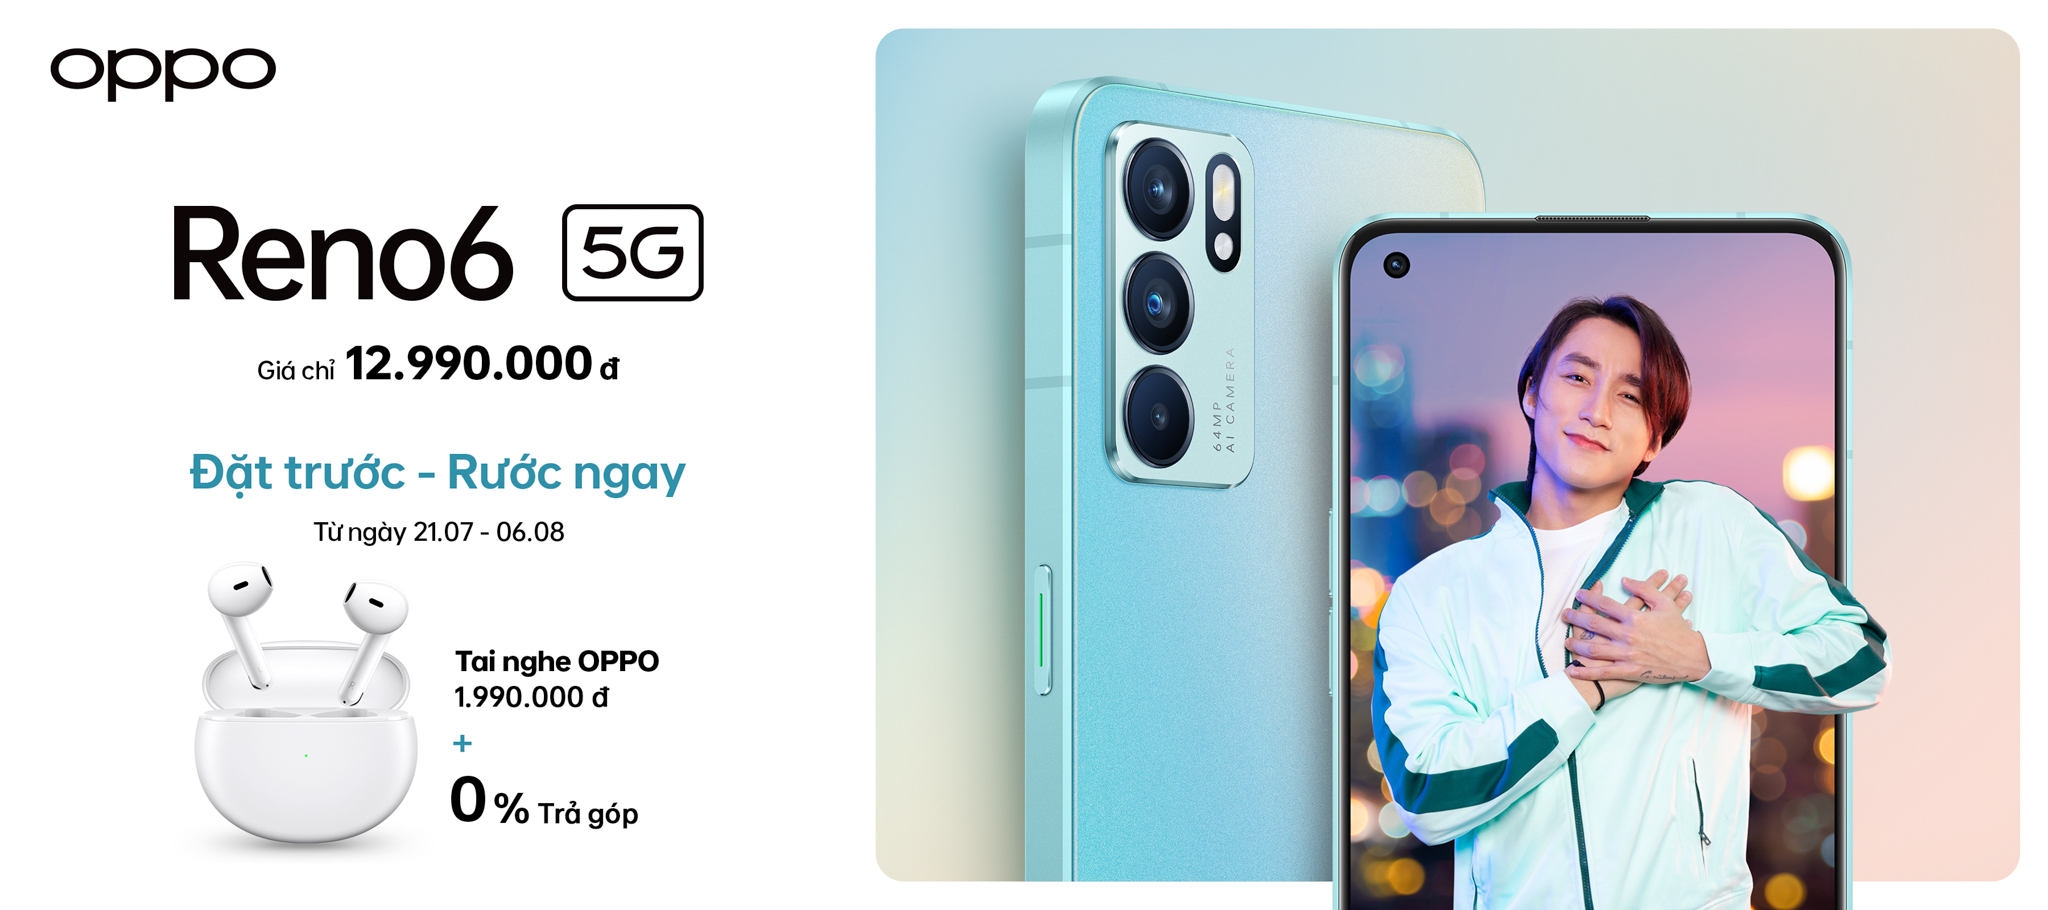 OPPO Reno6 5G chính thức ra mắt với thiết kế thời thượng và Video Chân dung Bokeh Flare ấn tượng